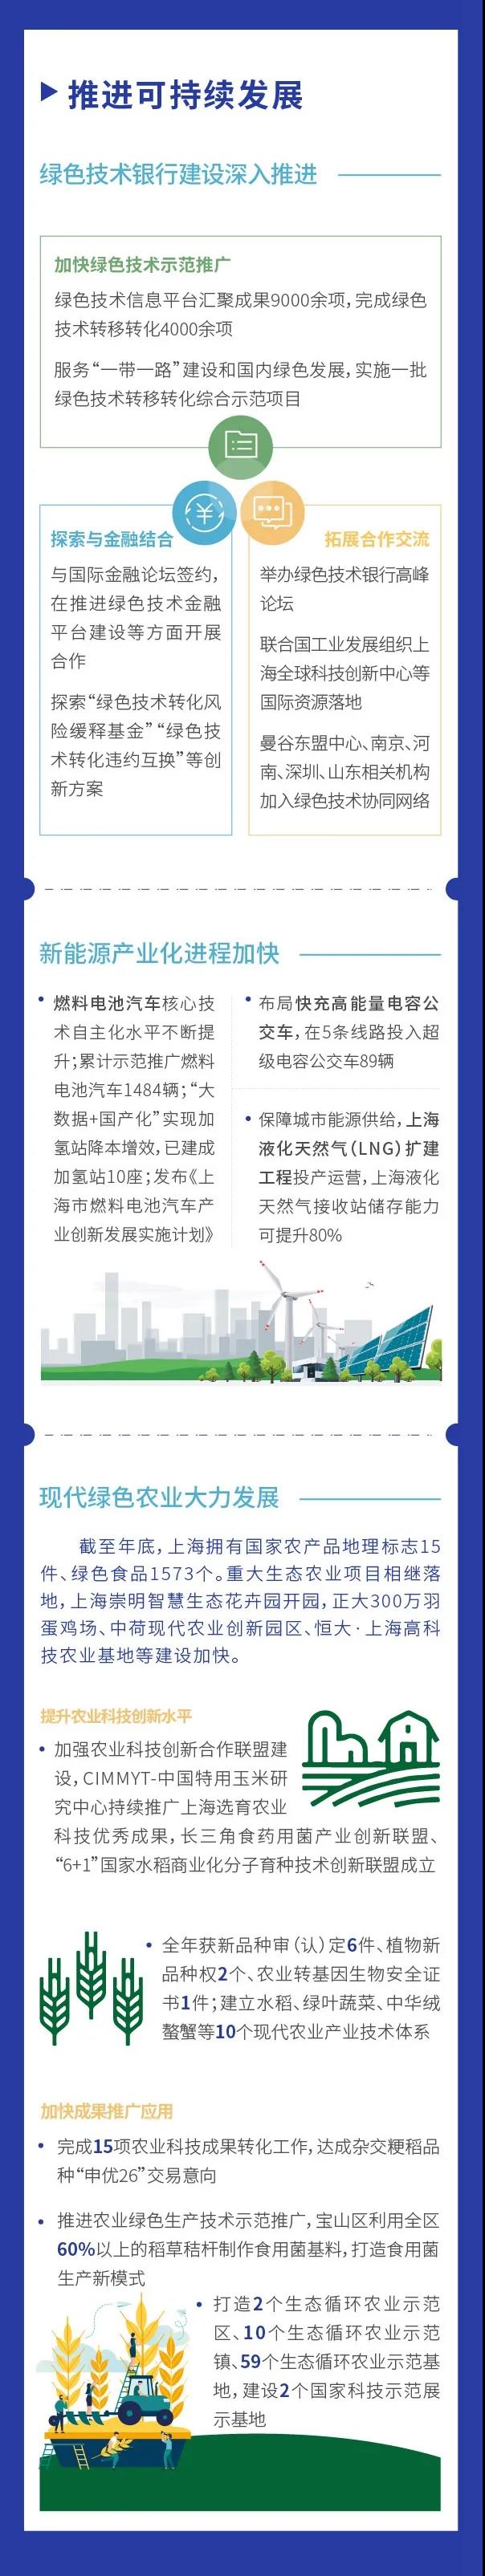 图看《2020上海科技进步报告》③4.jpg